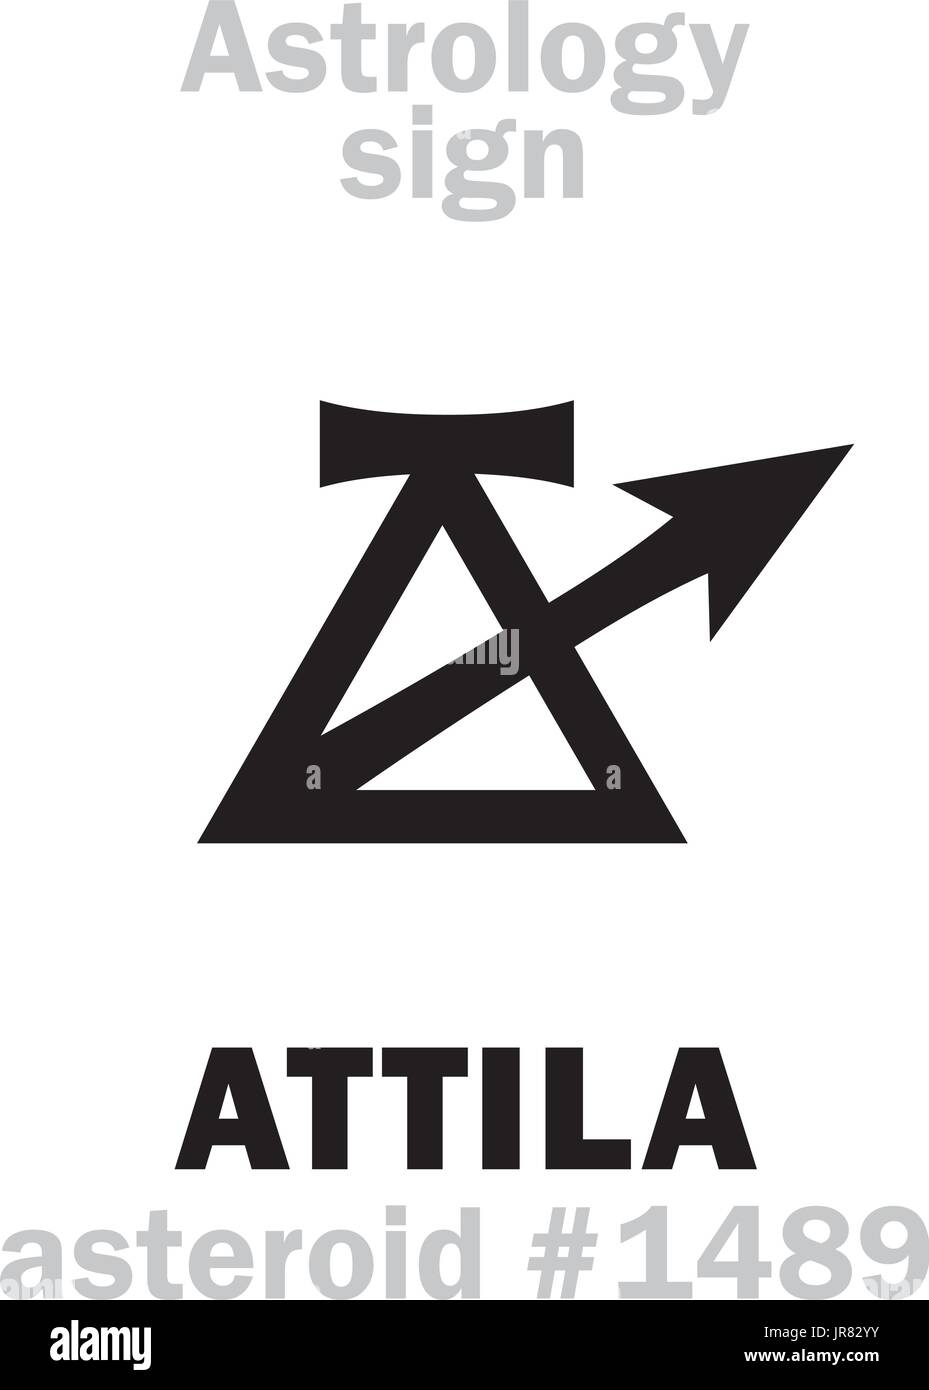 Astrologie-Alphabet: ATTILA (Geißel Gottes), Asteroid #1489. Hieroglyphen Charakter Zeichen (einzelnes Symbol). Stock Vektor